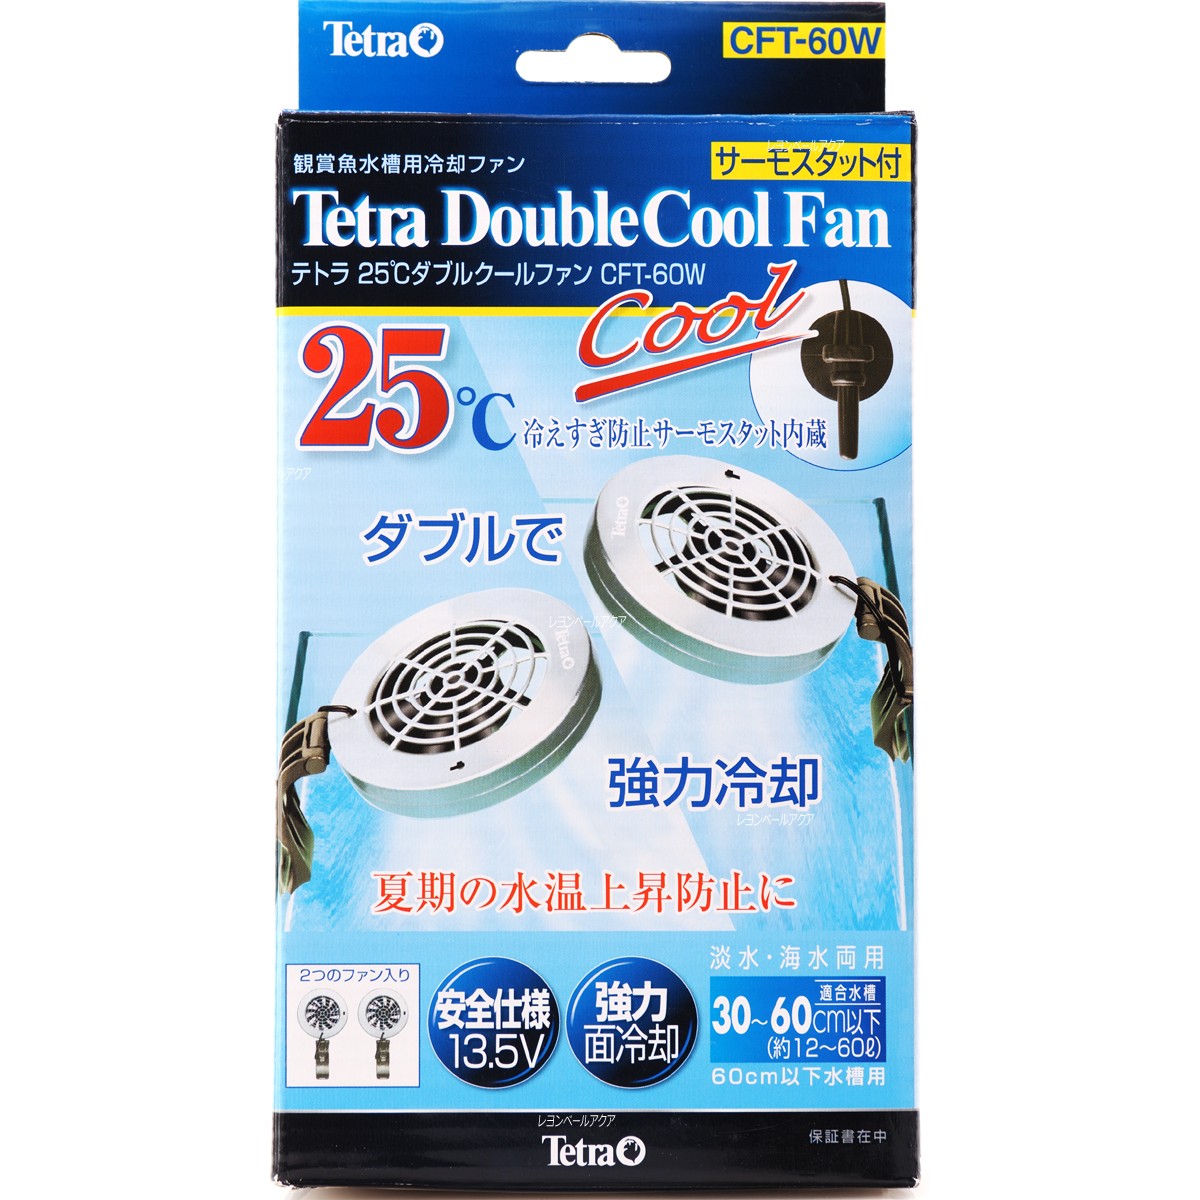  Tetra 25*C двойной прохладный вентилятор CFT60W термостат имеется коробка 